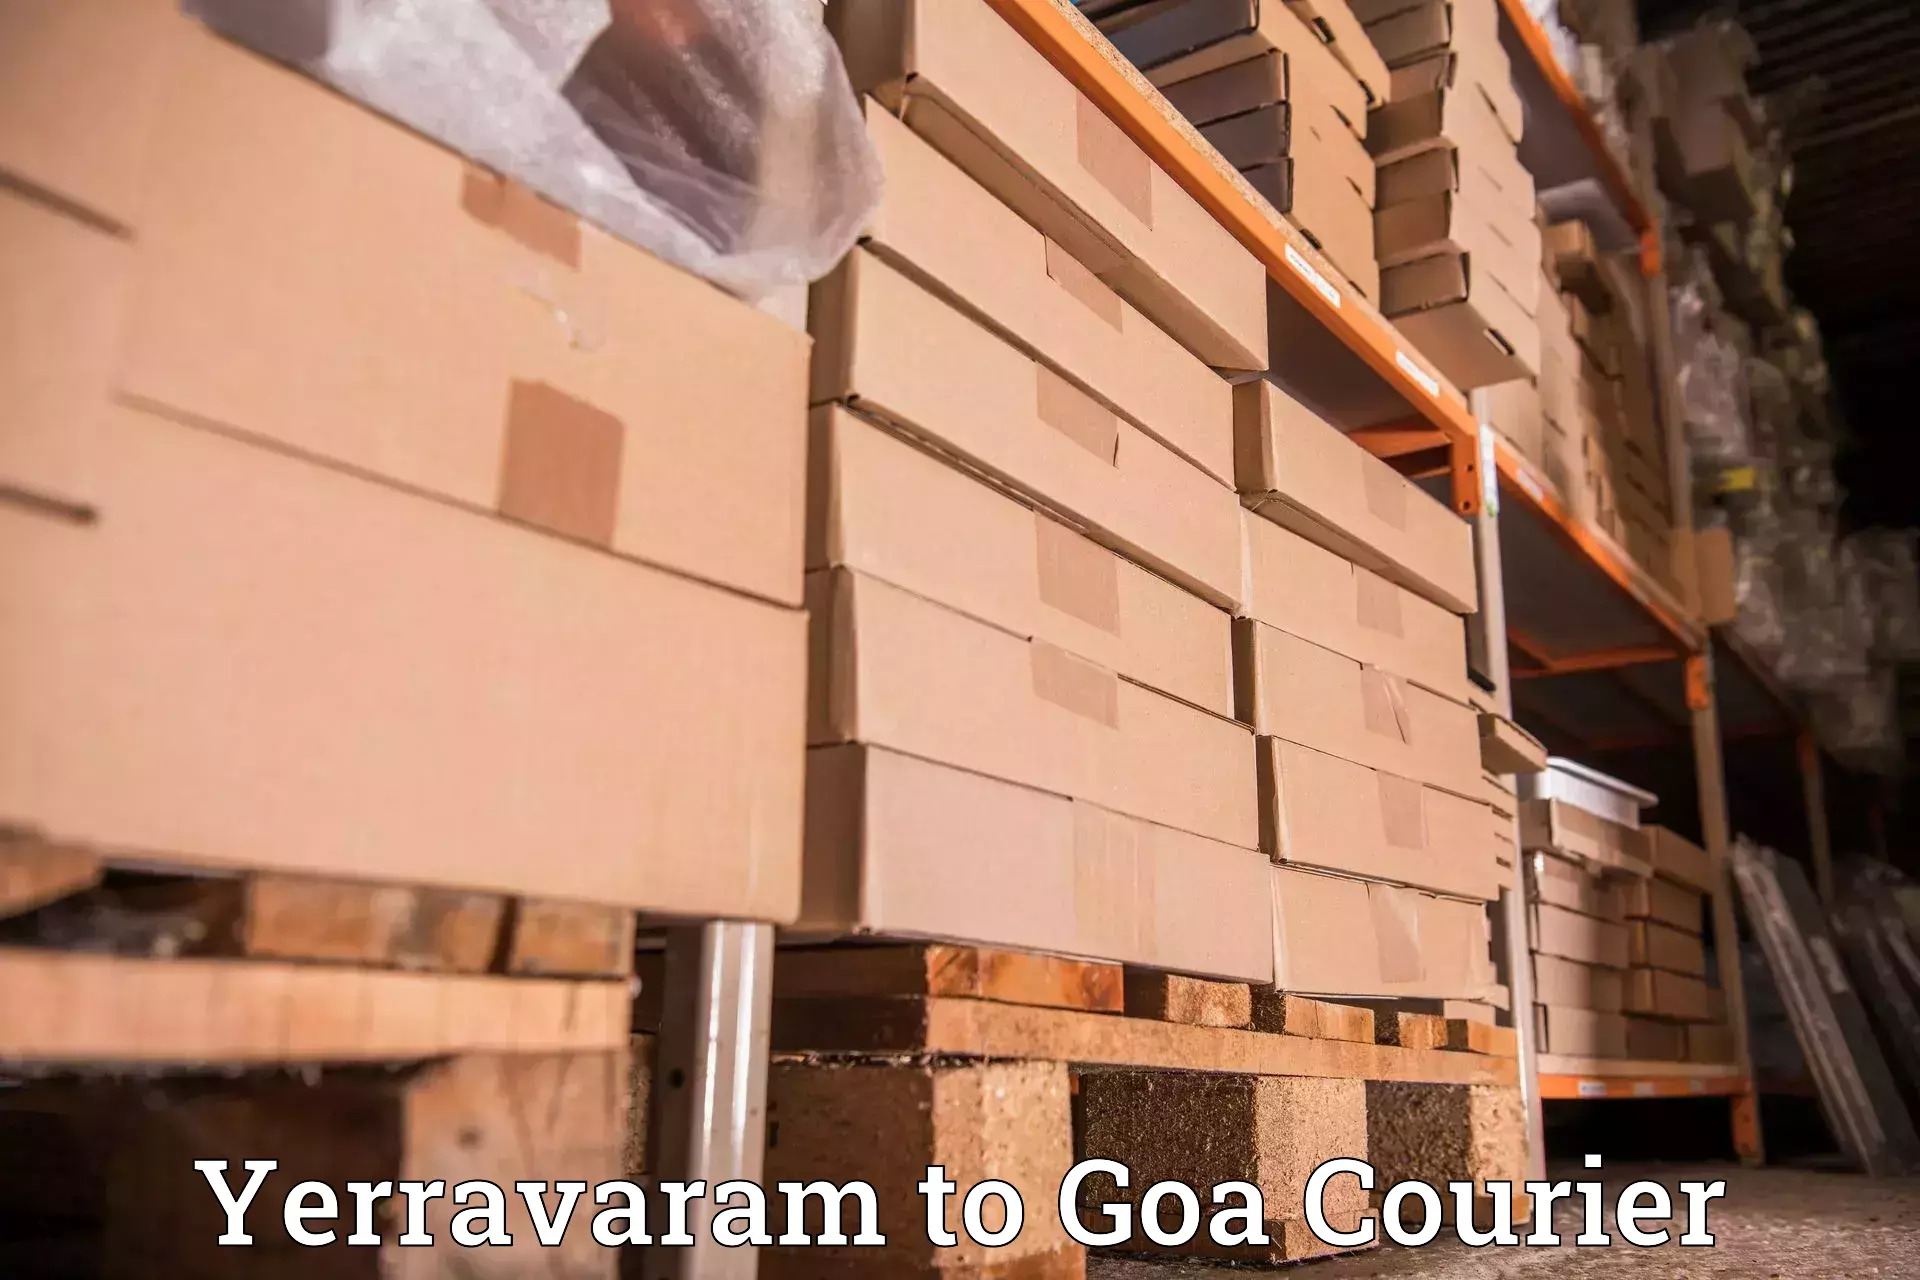 State-of-the-art courier technology Yerravaram to Sanvordem